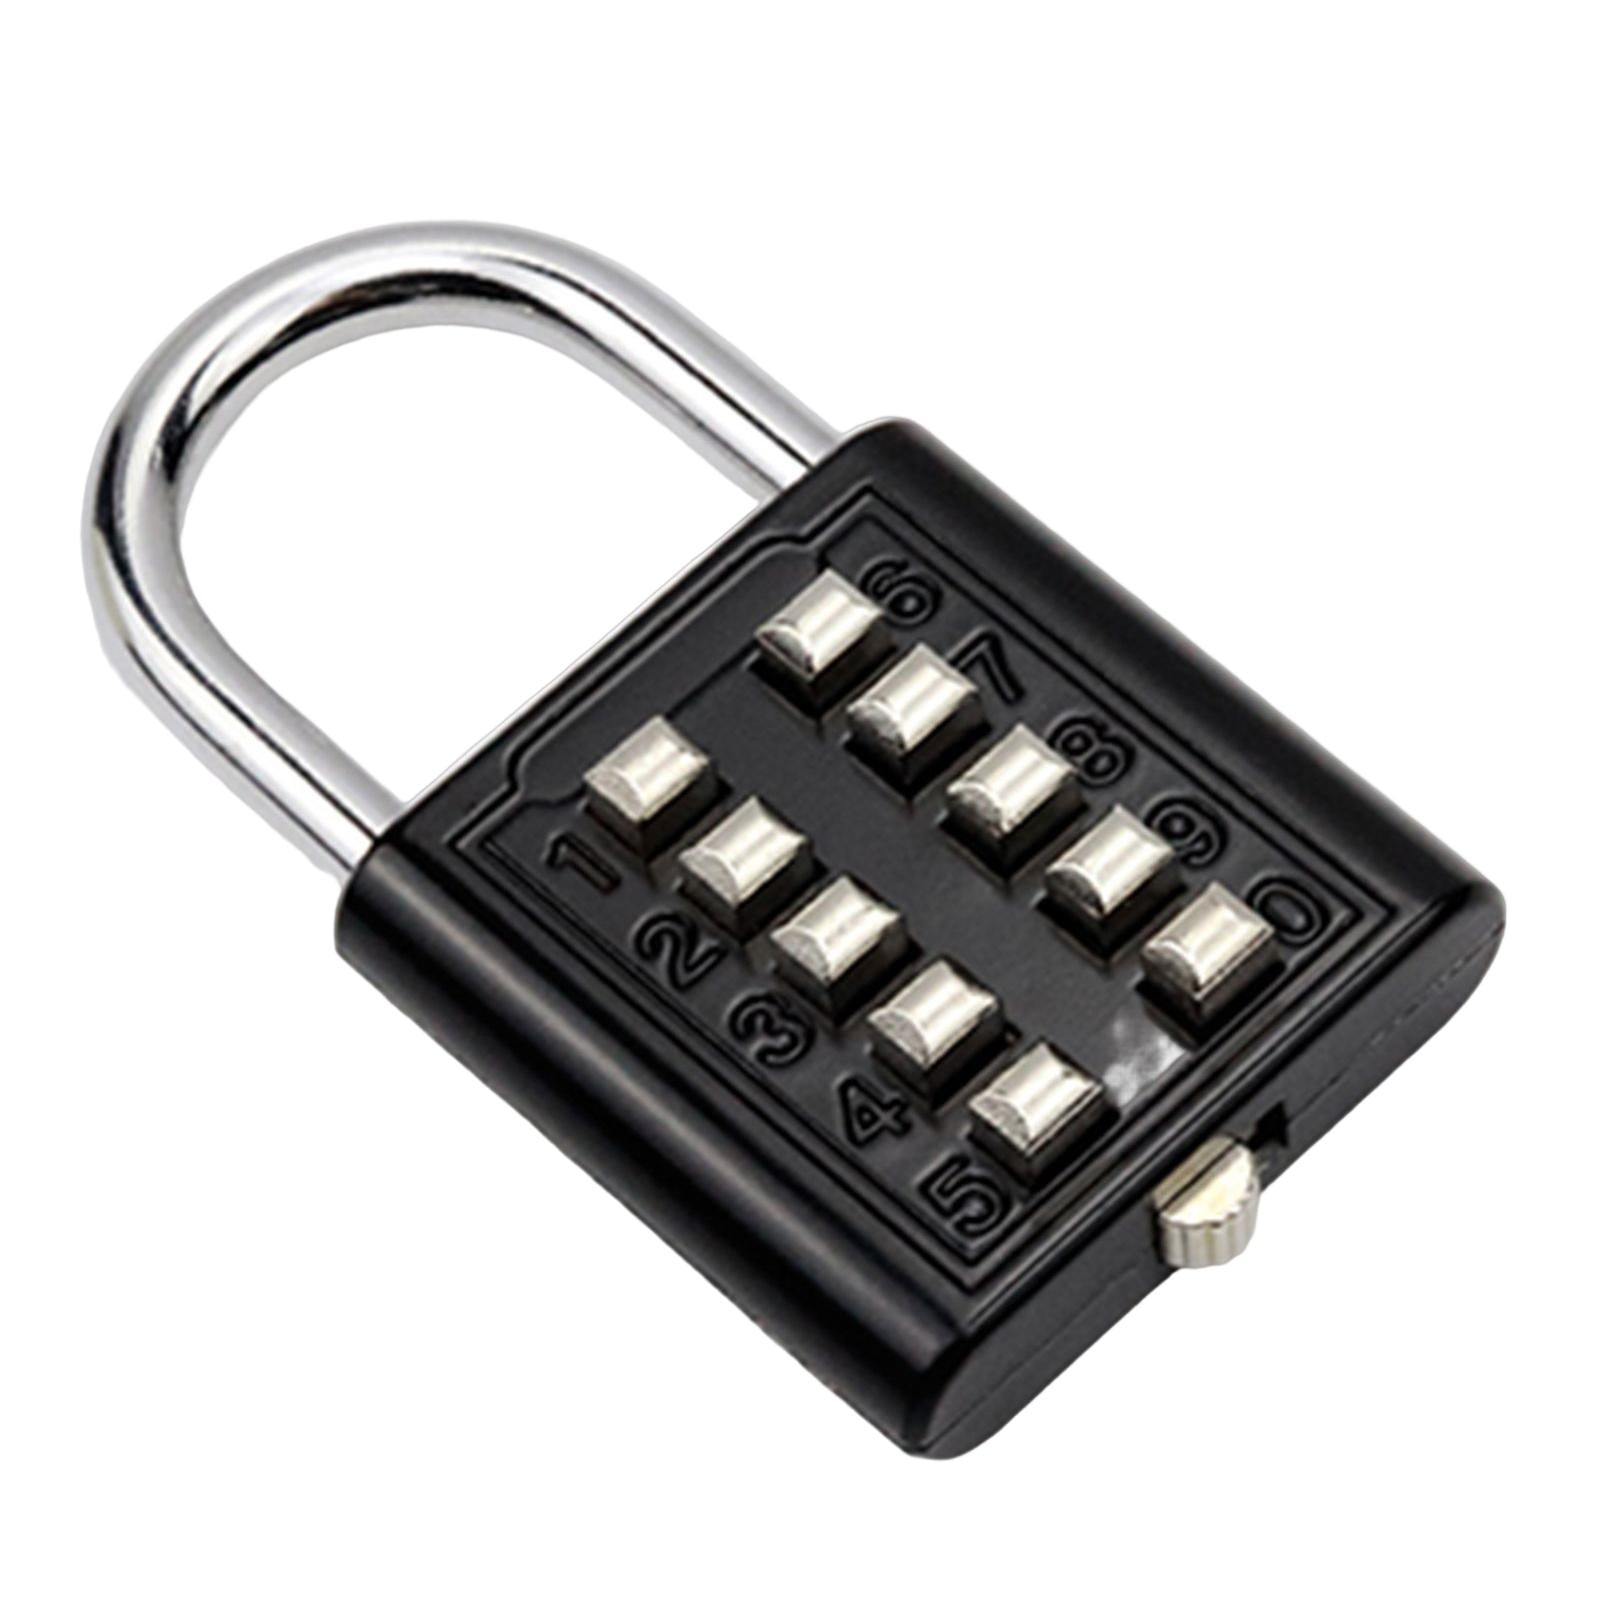 10 Digit Combination Padlock Lengthened Shackle locks for Cabinet Gate Fence Black